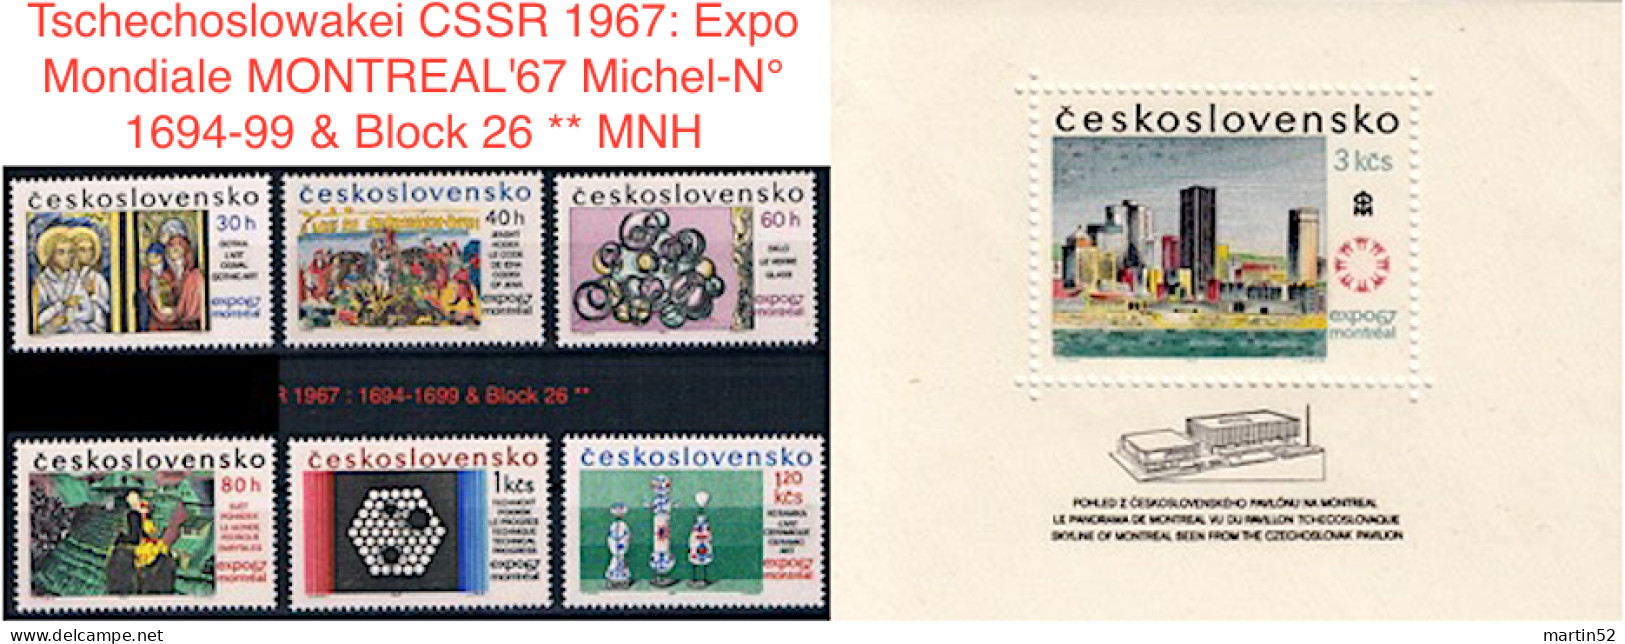 Tschechoslowakei CSSR 1967: Expo Mondiale MONTREAL'67 Michel-N° 1694-99 & Block 26 ** MNH (NOTA BENE) - 1967 – Montréal (Canada)